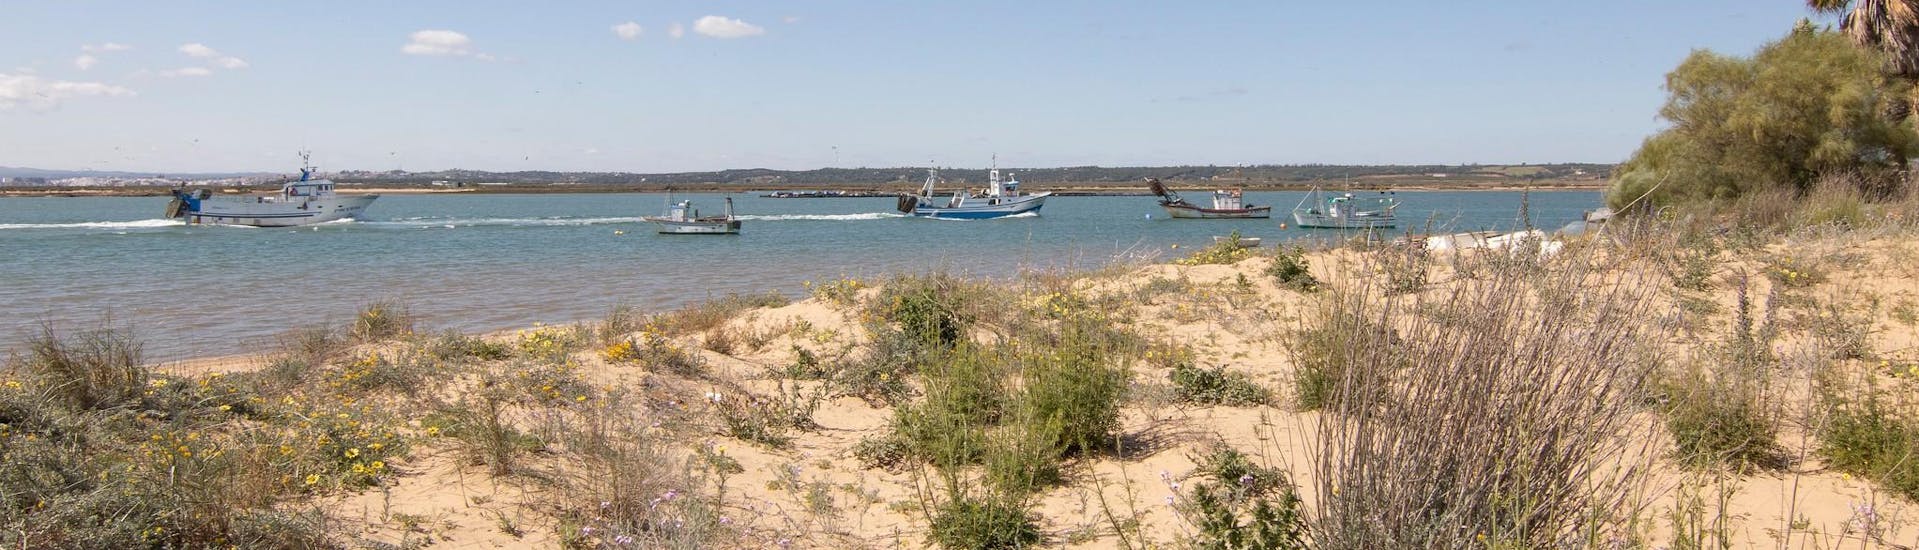 Bateaux de pêche devant la plage d'Isla Cristina, un endroit magnifique que vous pouvez découvrir lors d'une excursion en bateau.